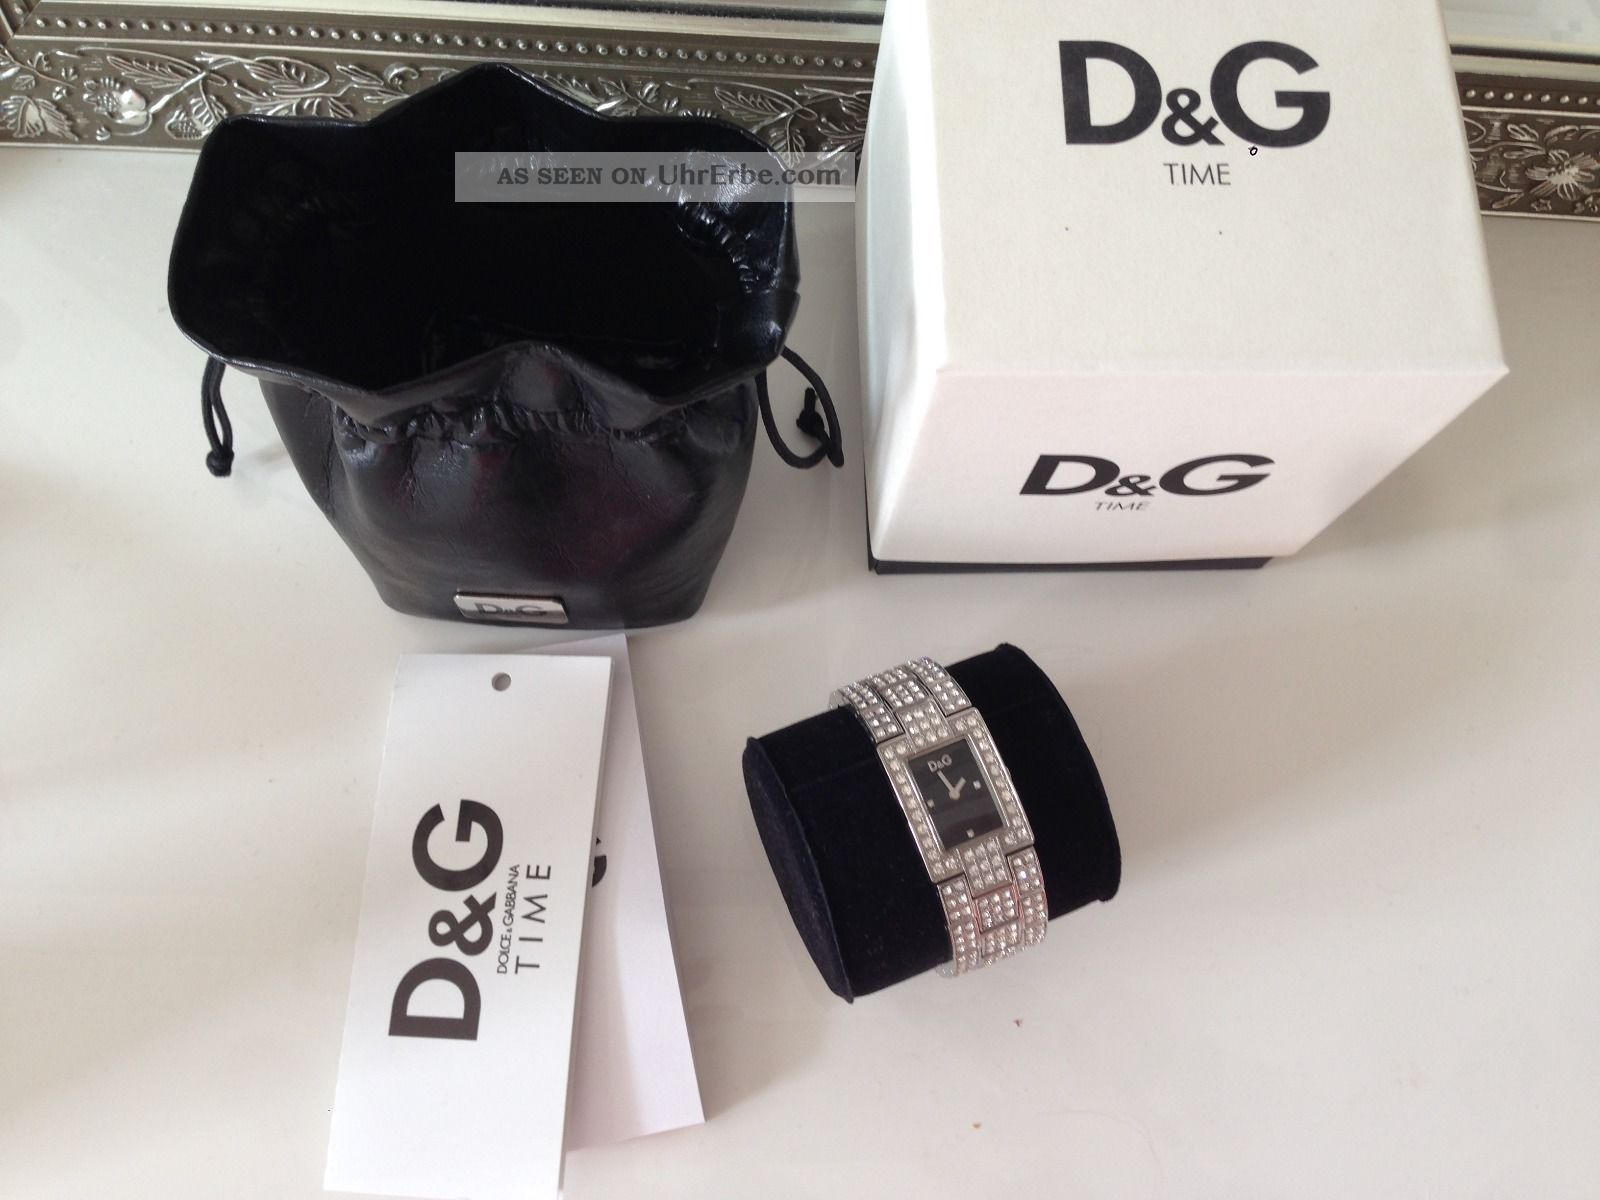 Dolce & Gabbana D&g Armband Uhr Silber - Mit Etui Strass Luxus Pur